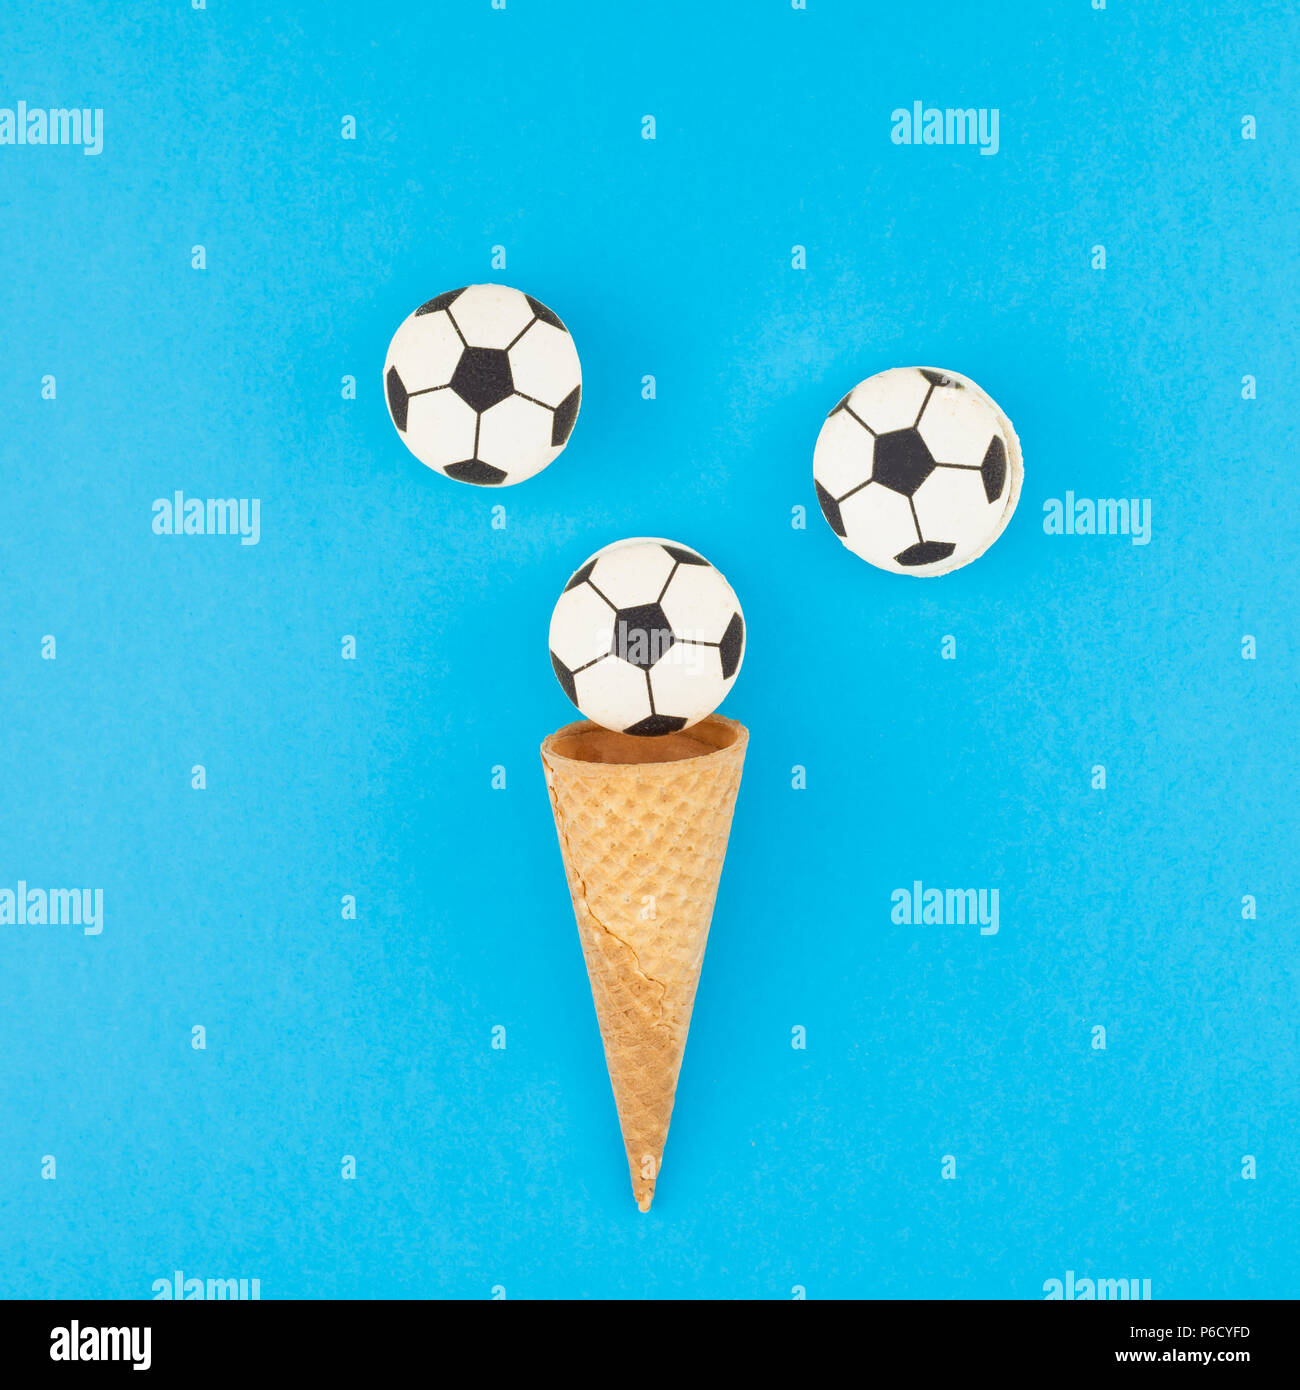 Square télévision créative jeter Vue de dessus de la crème glacée cônes alvéolés avec des ballons de foot macarons sur fond bleu clair bold avec copie espace dans un style minimaliste Banque D'Images